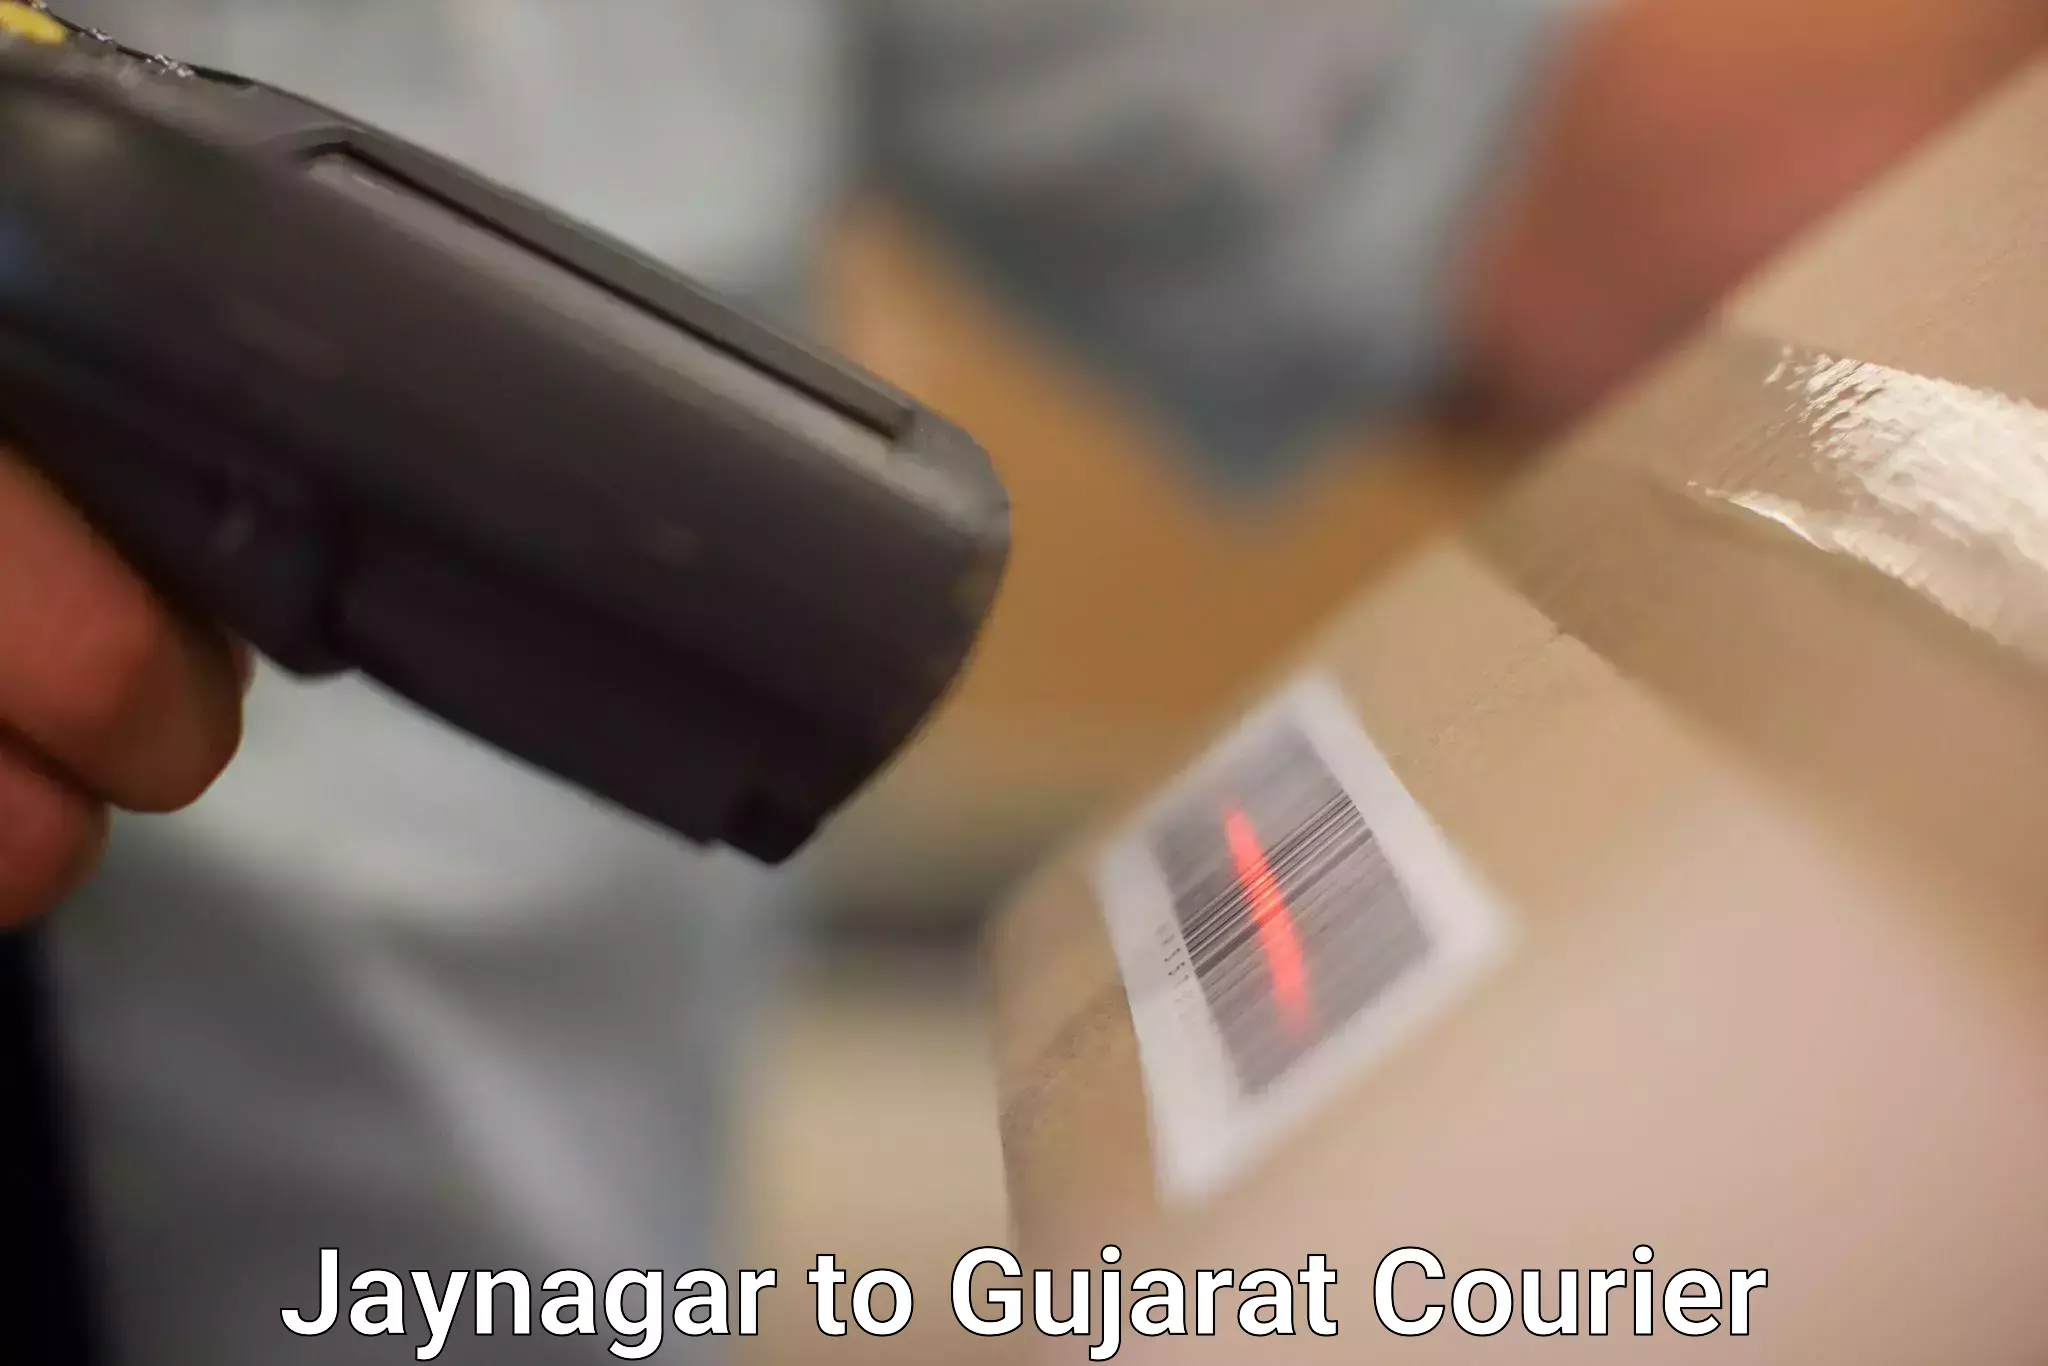 Individual parcel service Jaynagar to Vadodara